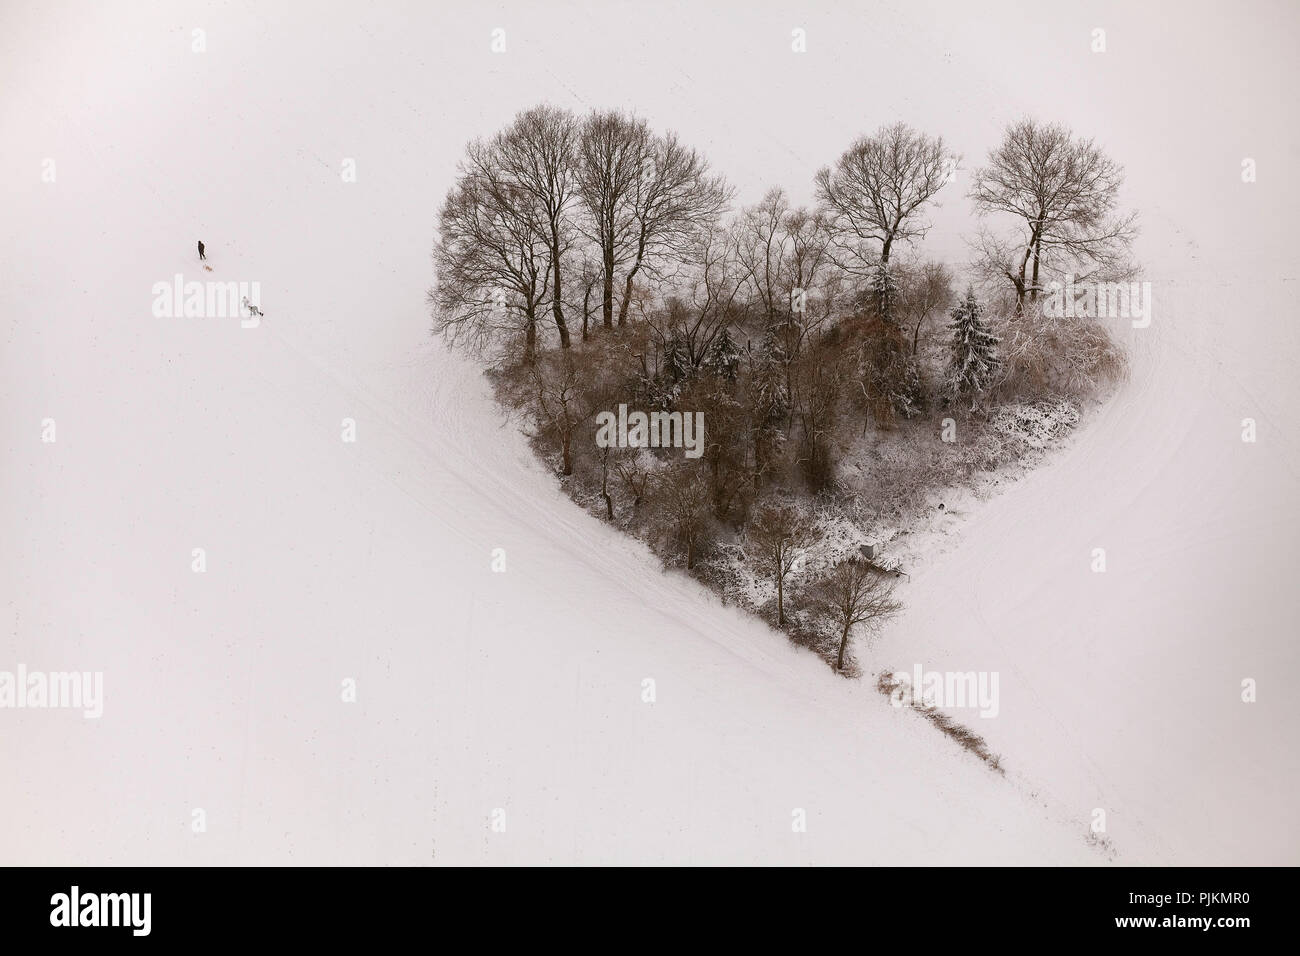 Vista aérea, grupo del árbol en forma de corazón, corazón, de nieve, trineos, peatonal, Hachhausen Oelmuehlenweg Datteln, Datteln, área de Ruhr, Renania del Norte-Westfalia, Alemania, Europa Foto de stock